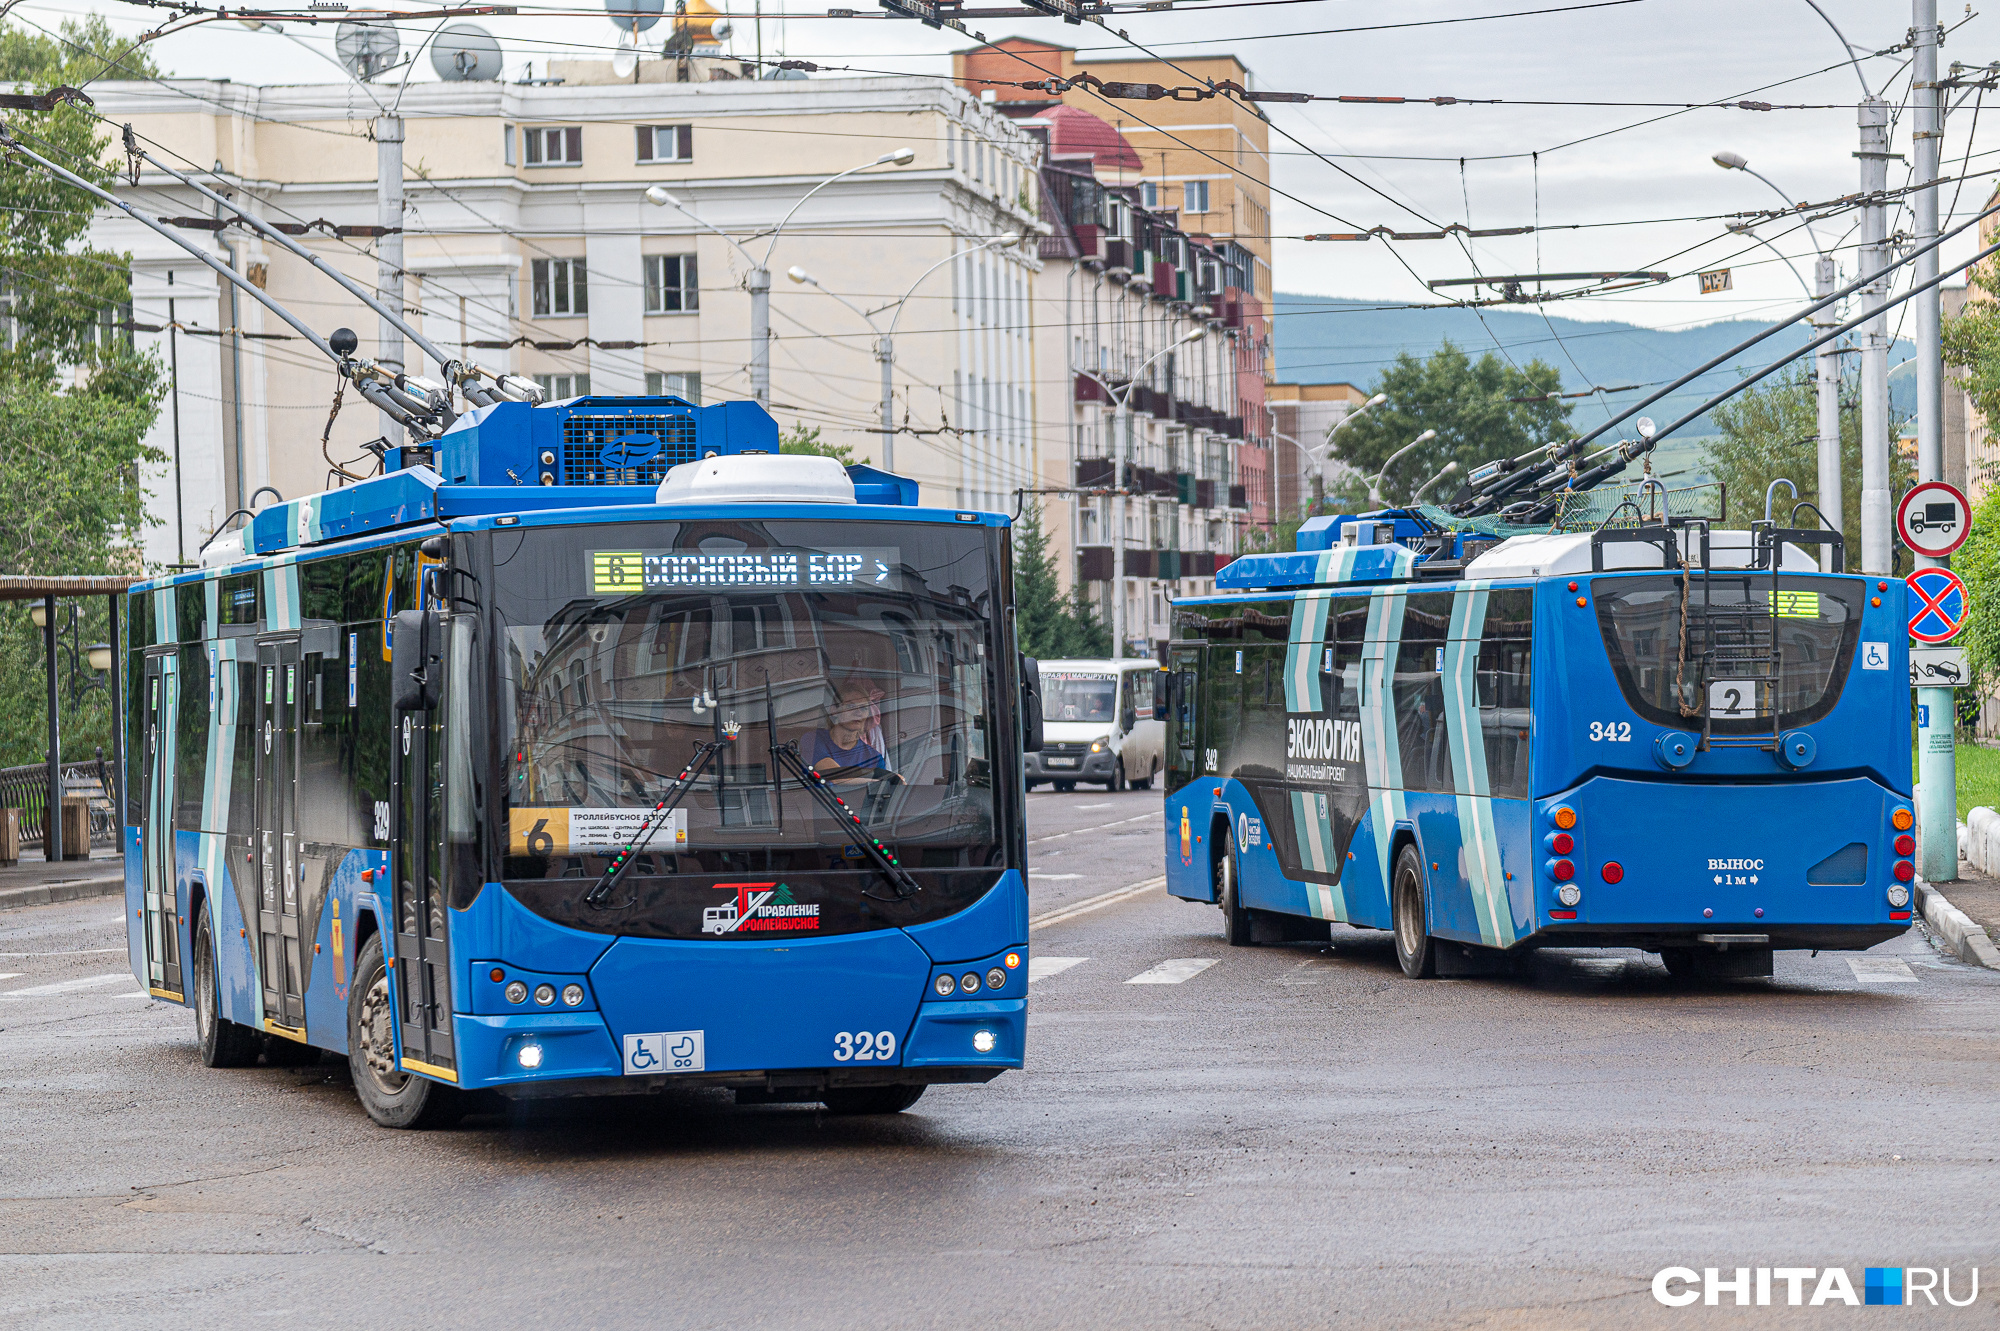 Чита закупила 10 новых троллейбусов, которые поставят в город в 2022 г.